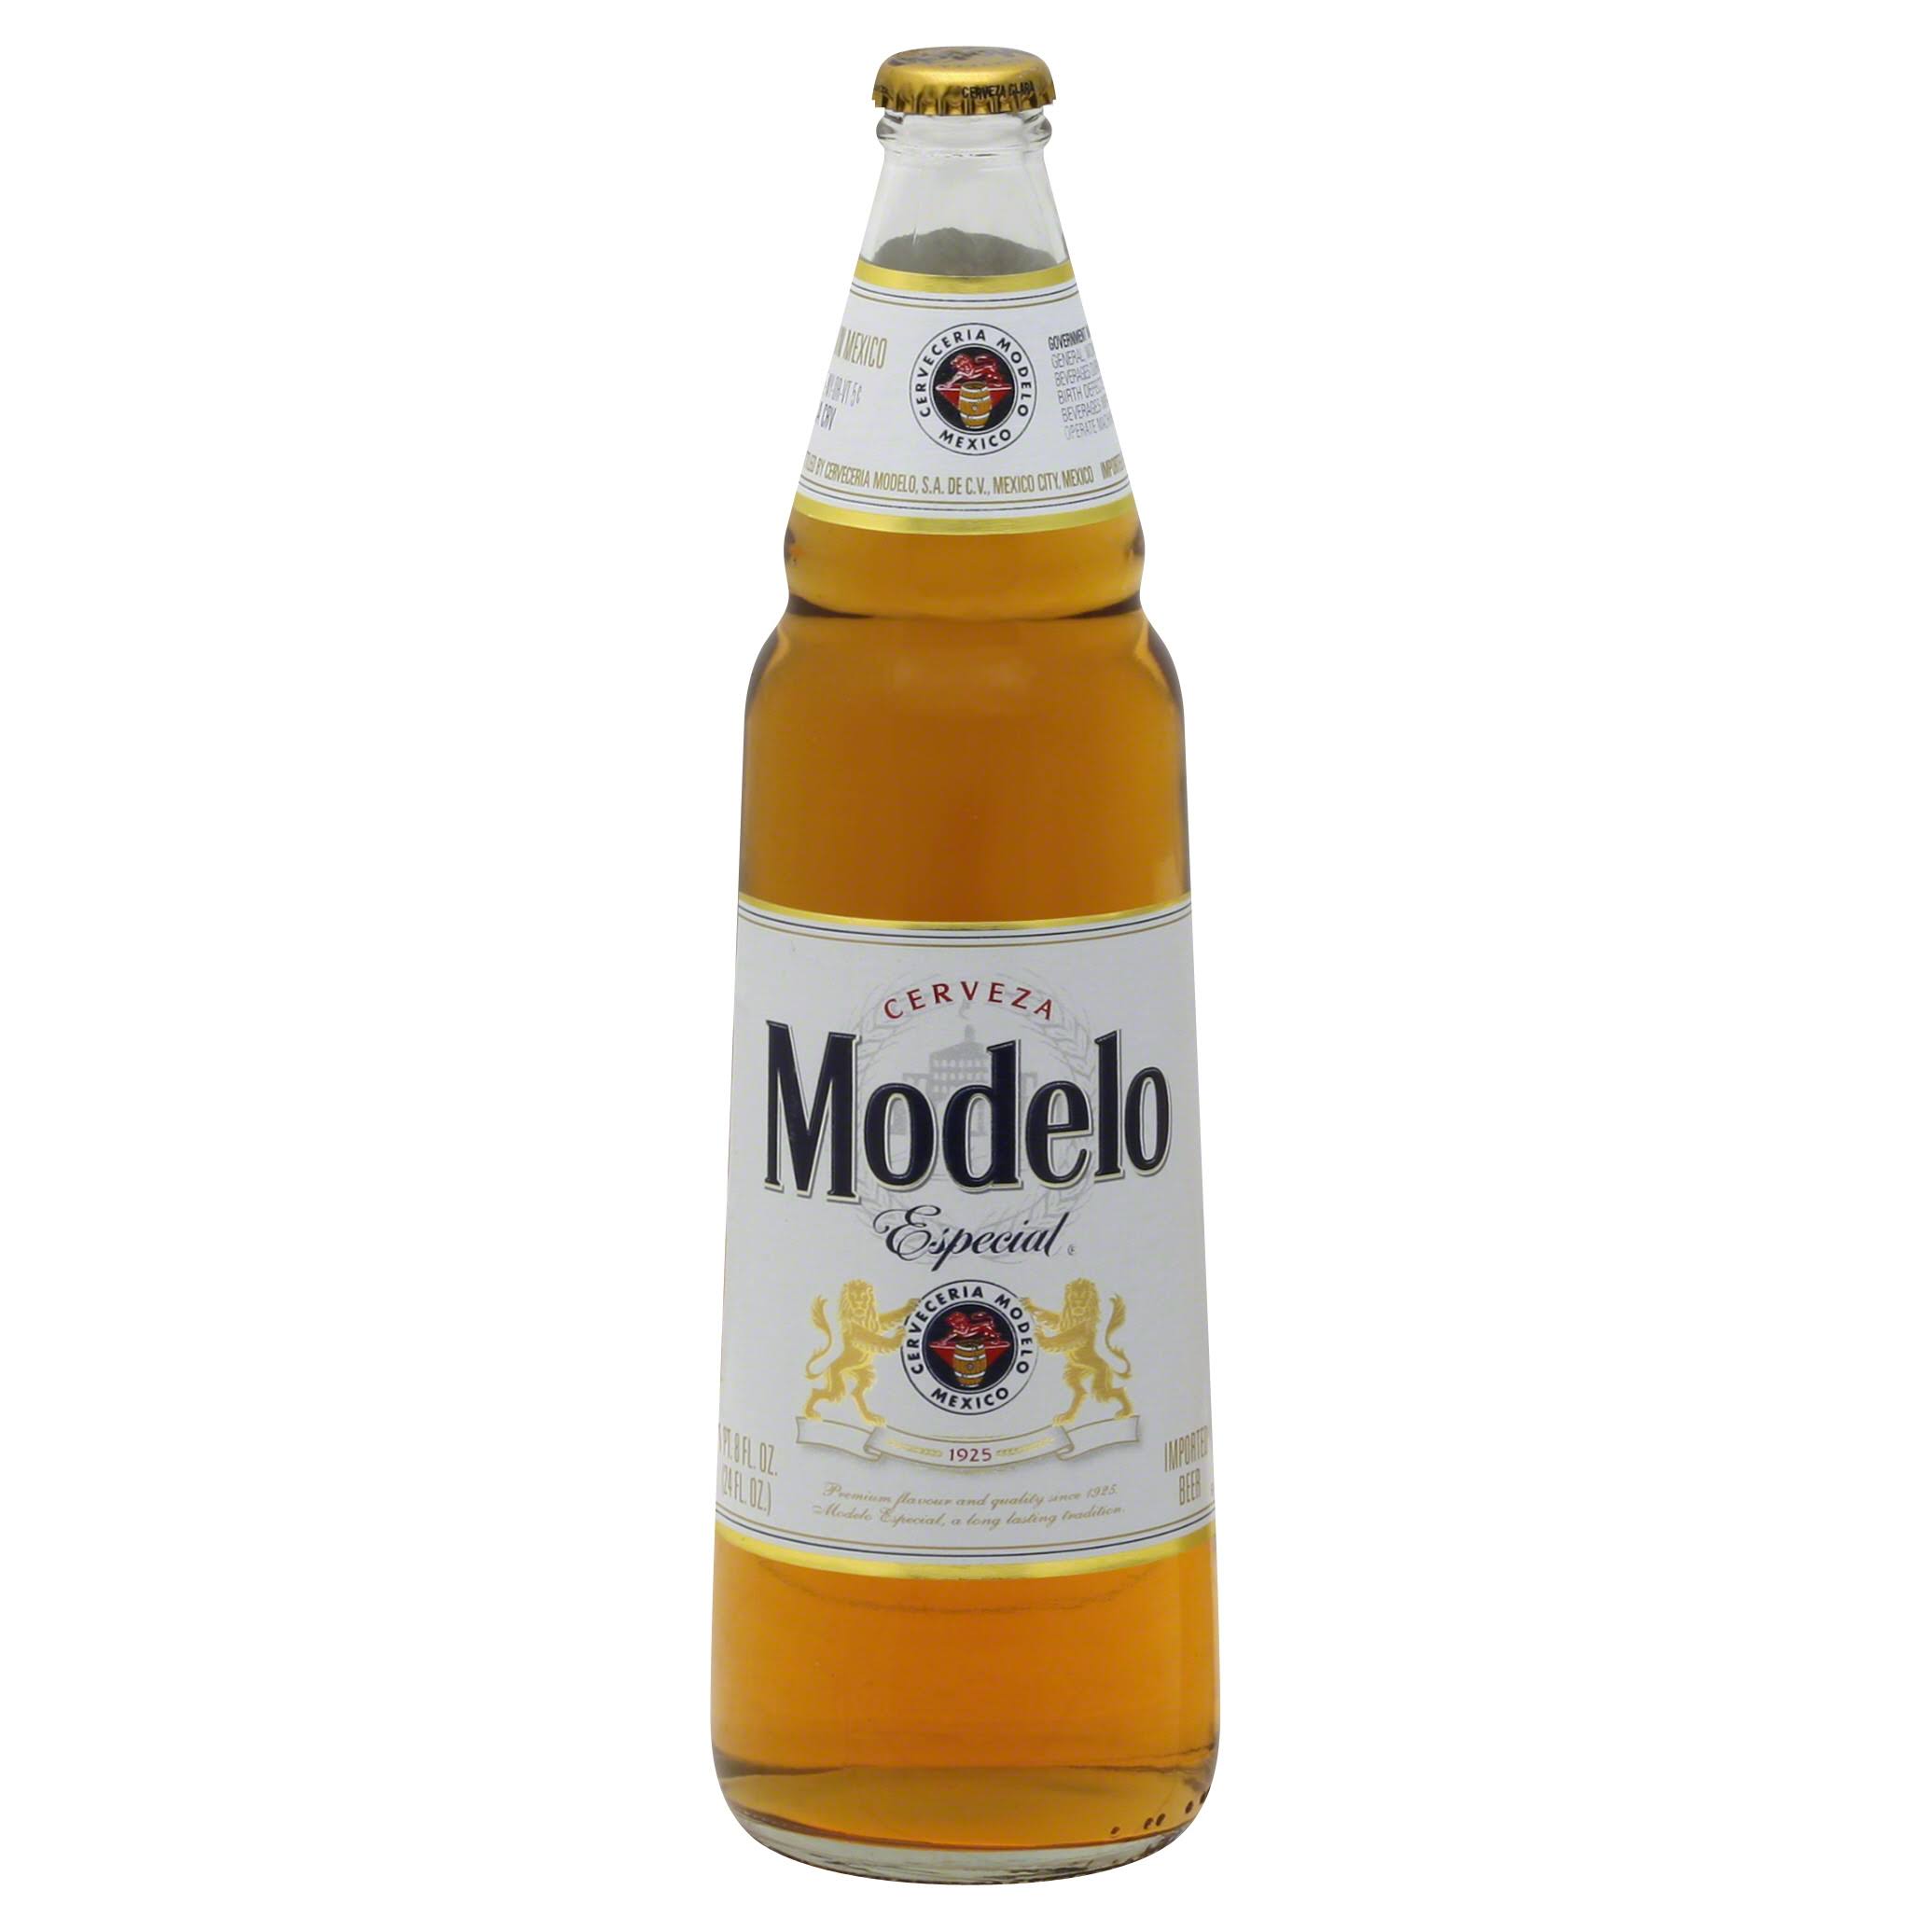 Modelo Beer, Especial - 24 fl oz